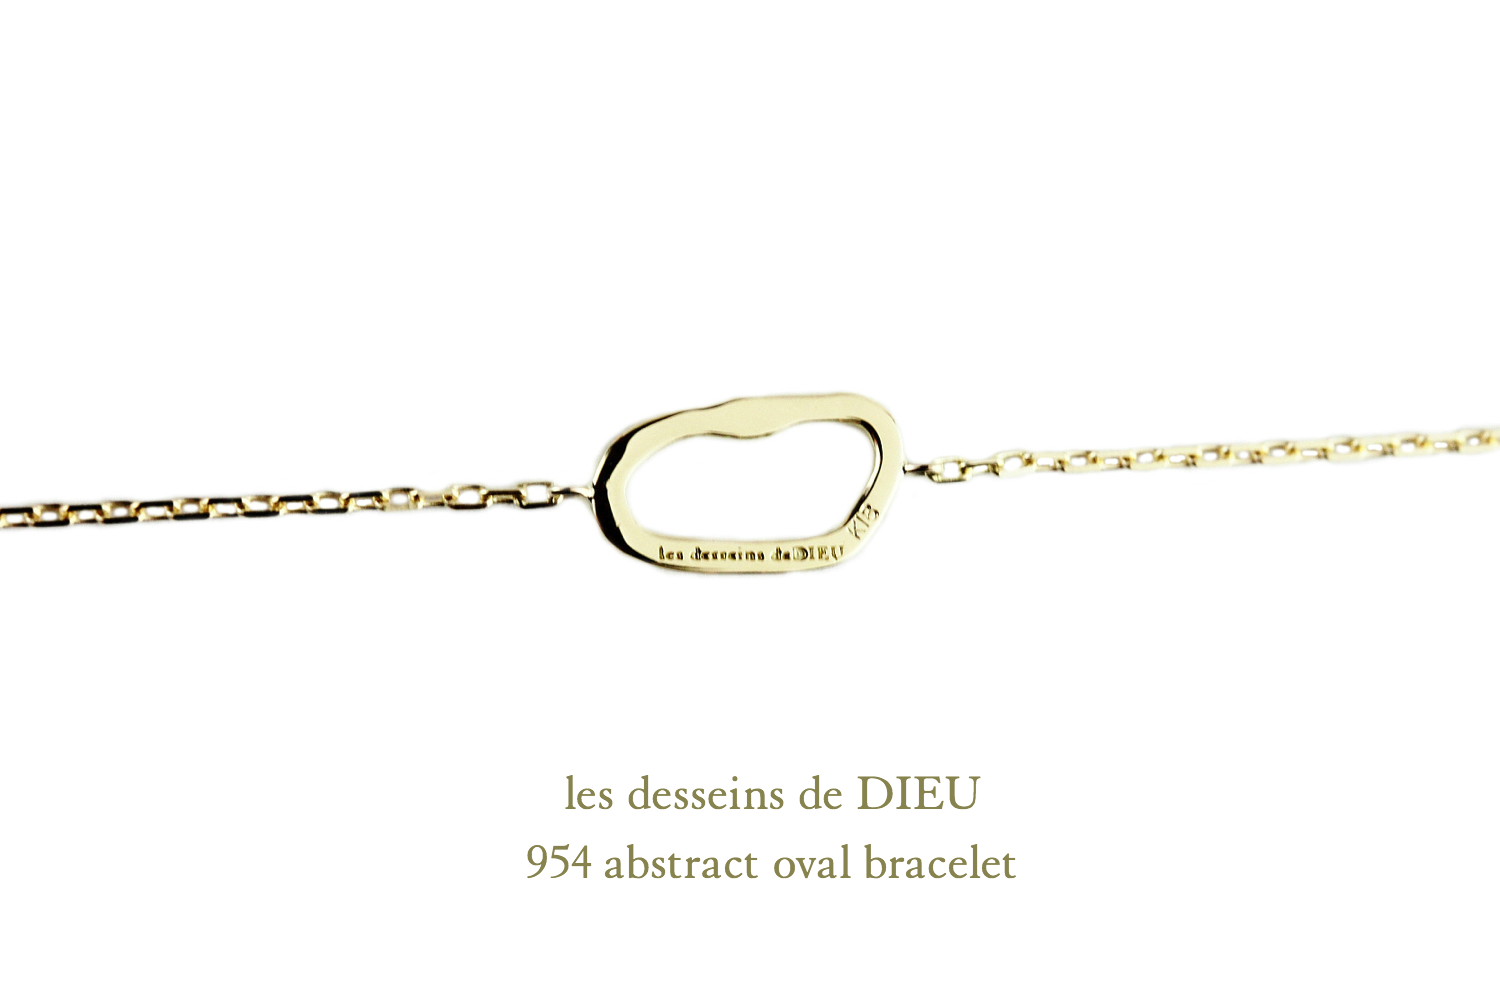 レデッサンドゥデュー 954 アブストラクト 華奢ブレスレット 抽象的 18金,les desseins de DIEU Abstract Bracelet K18